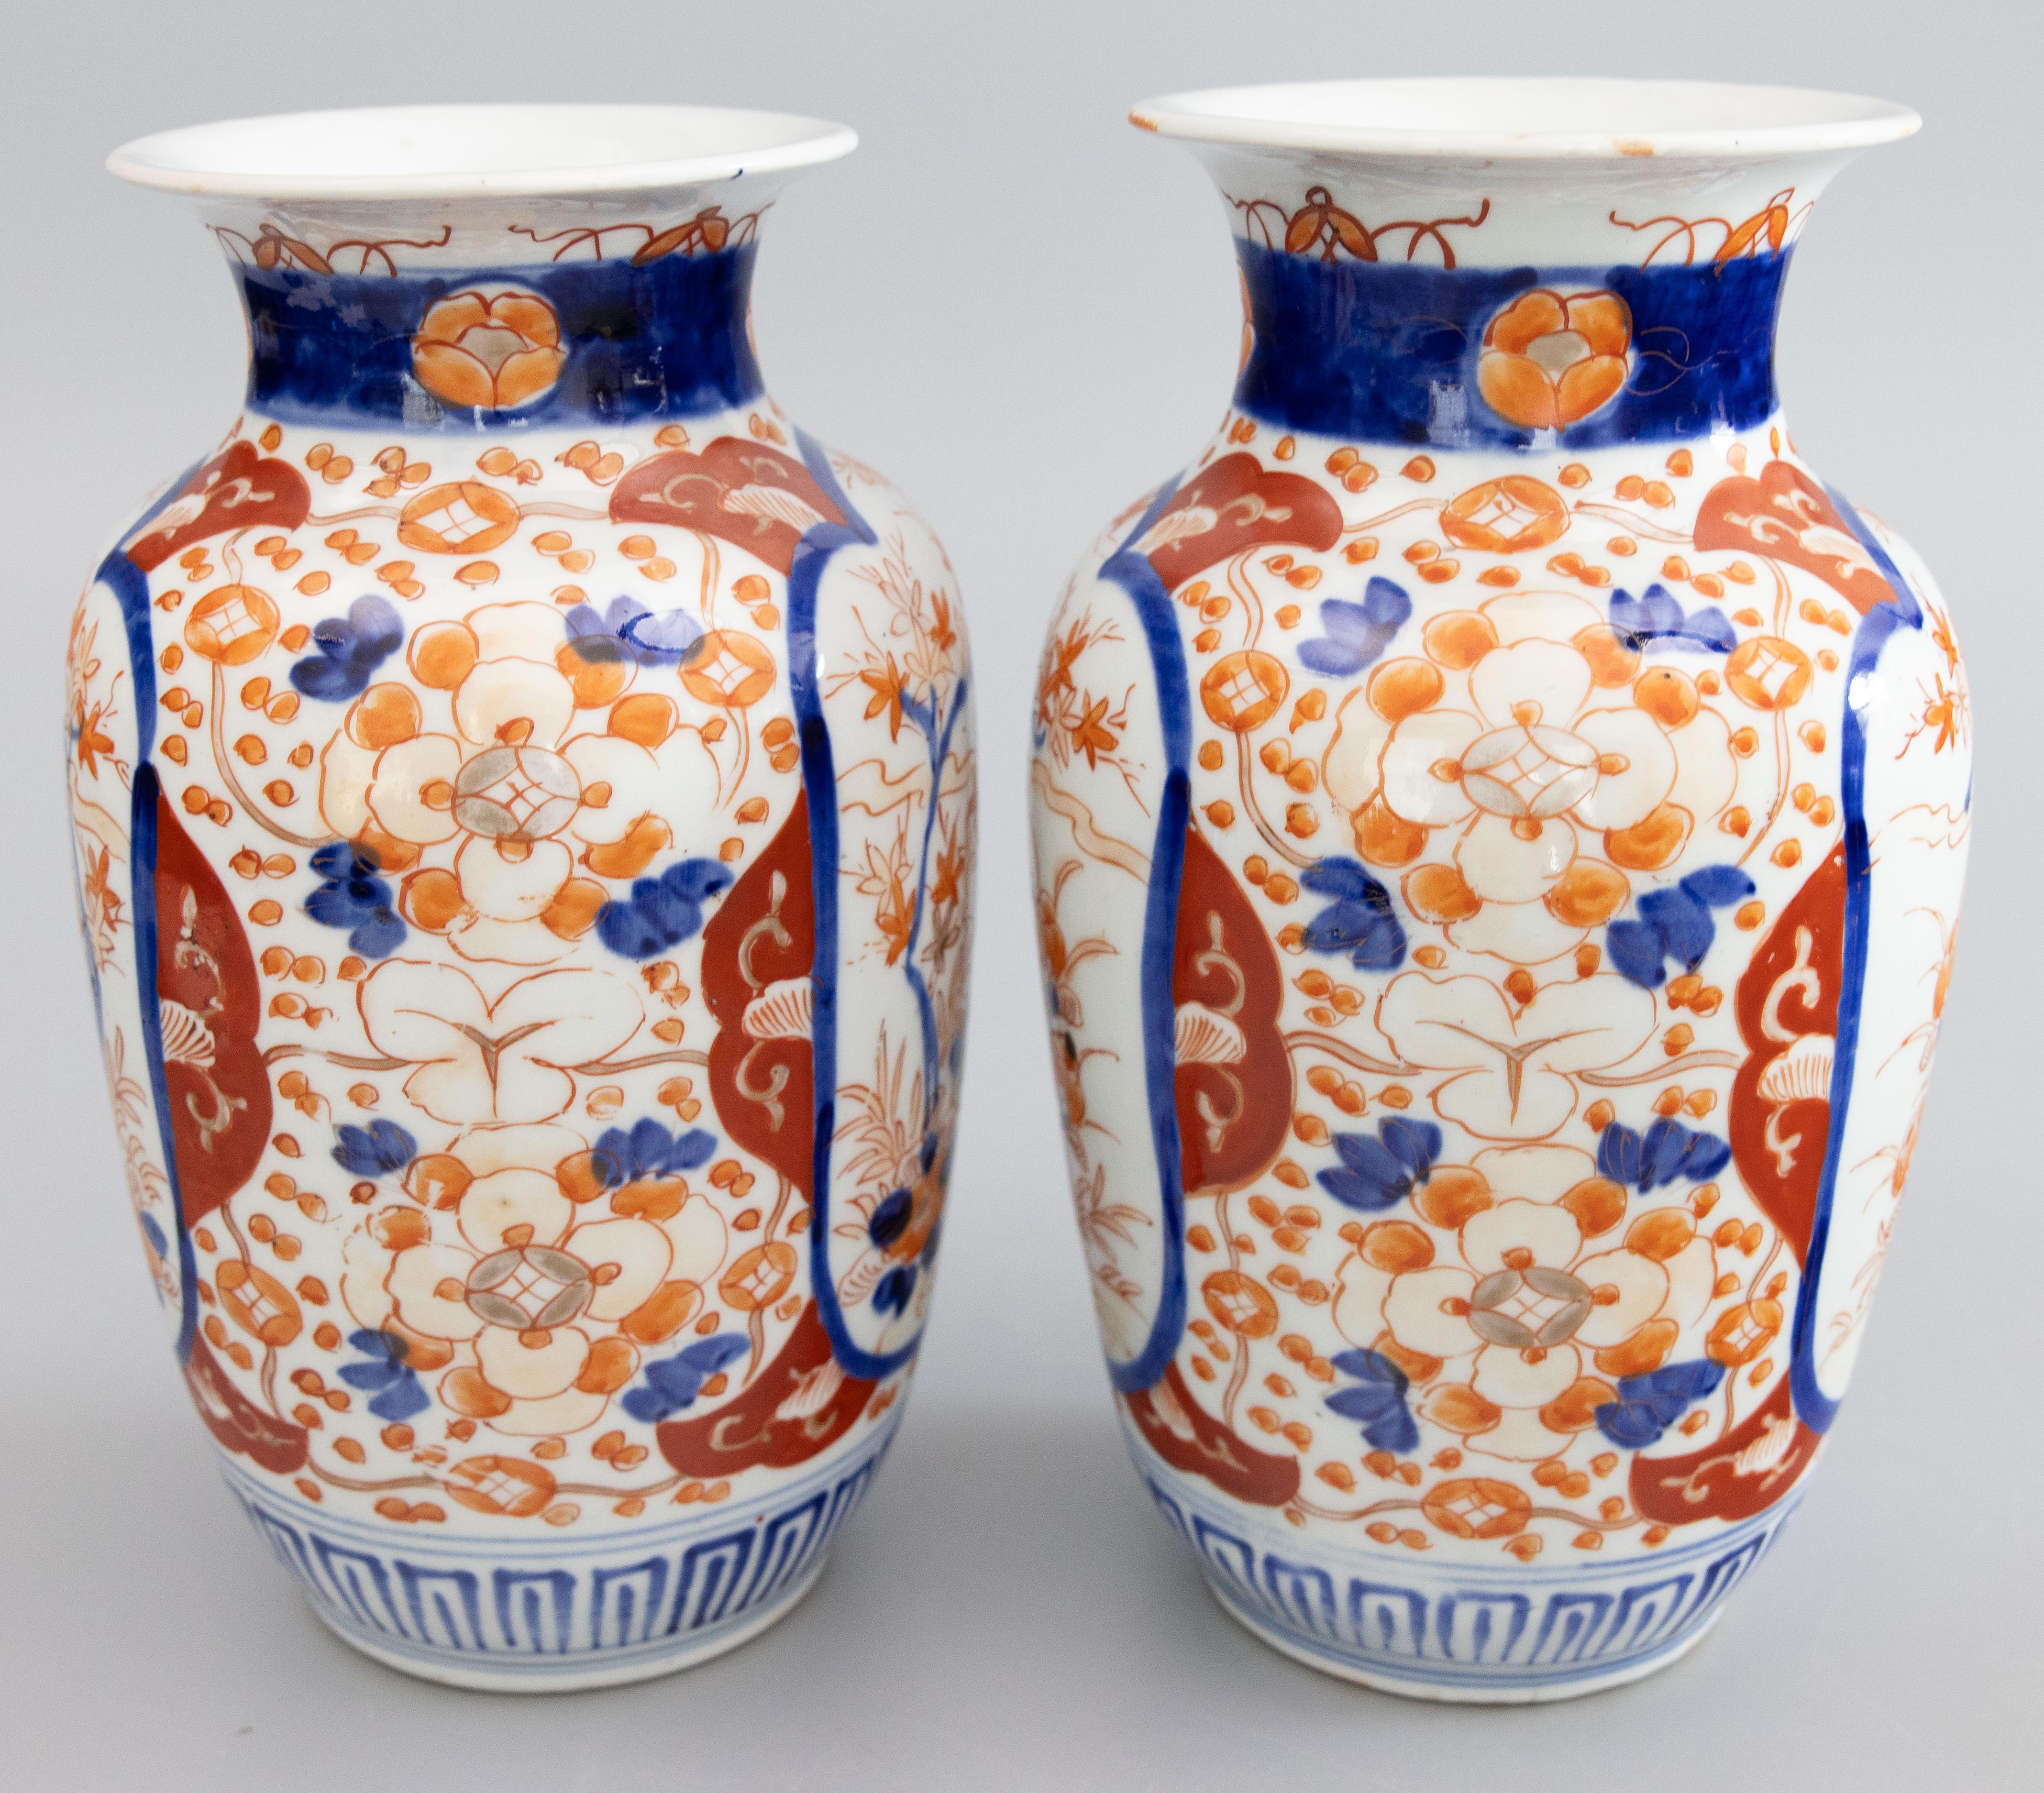 Une magnifique paire de vases en porcelaine Imari de la période japonaise Meiji du 19e siècle. Ces vases fins ont une forme charmante et des motifs floraux peints à la main dans les couleurs traditionnelles d'Imari. Ils sont dans un état antique